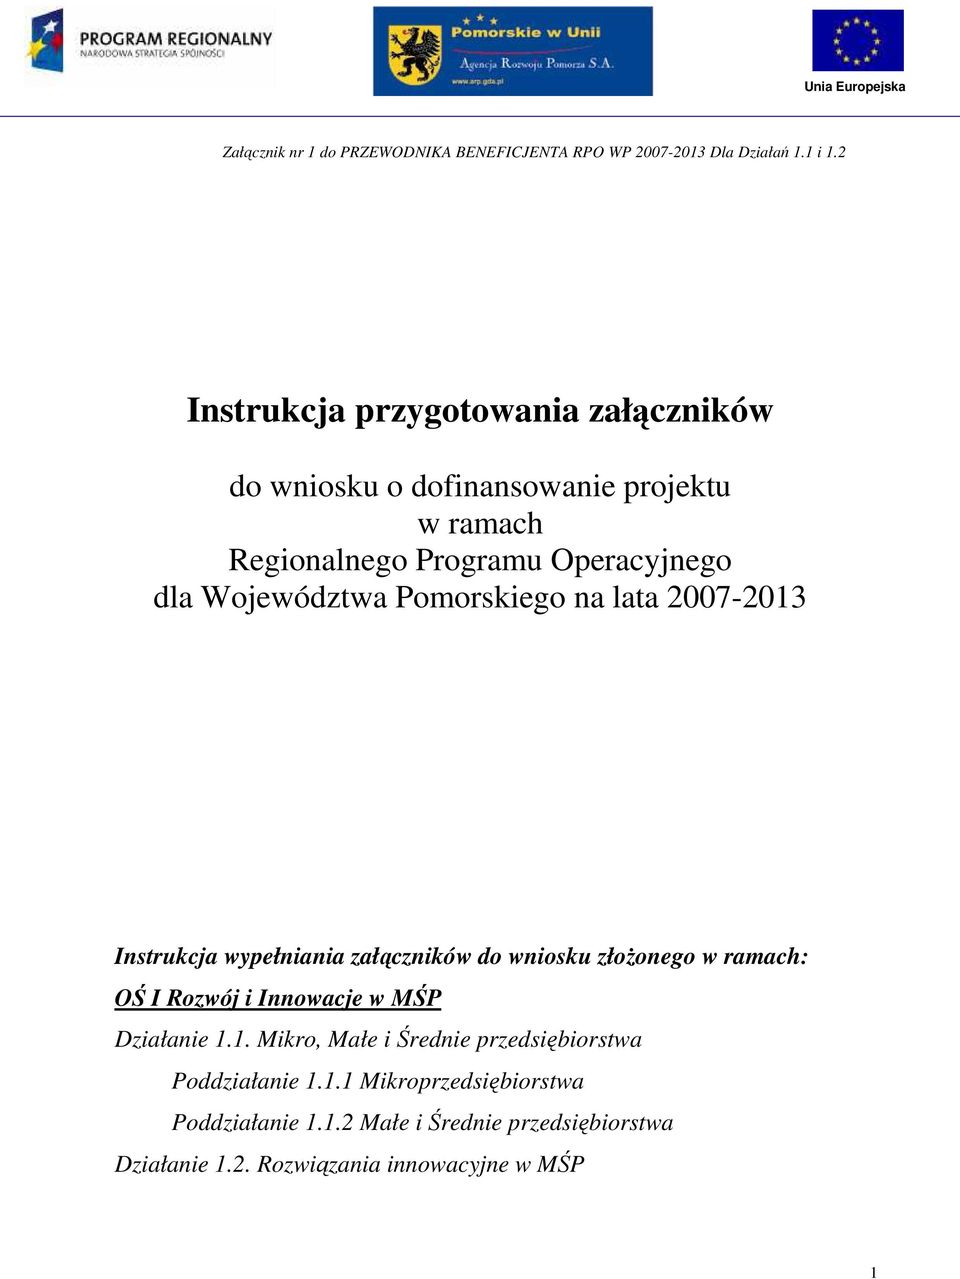 Pomorskiego na lata 2007-2013 Instrukcja wypełniania załączników do wniosku złoŝonego w ramach: OŚ I Rozwój i Innowacje w MŚP Działanie 1.